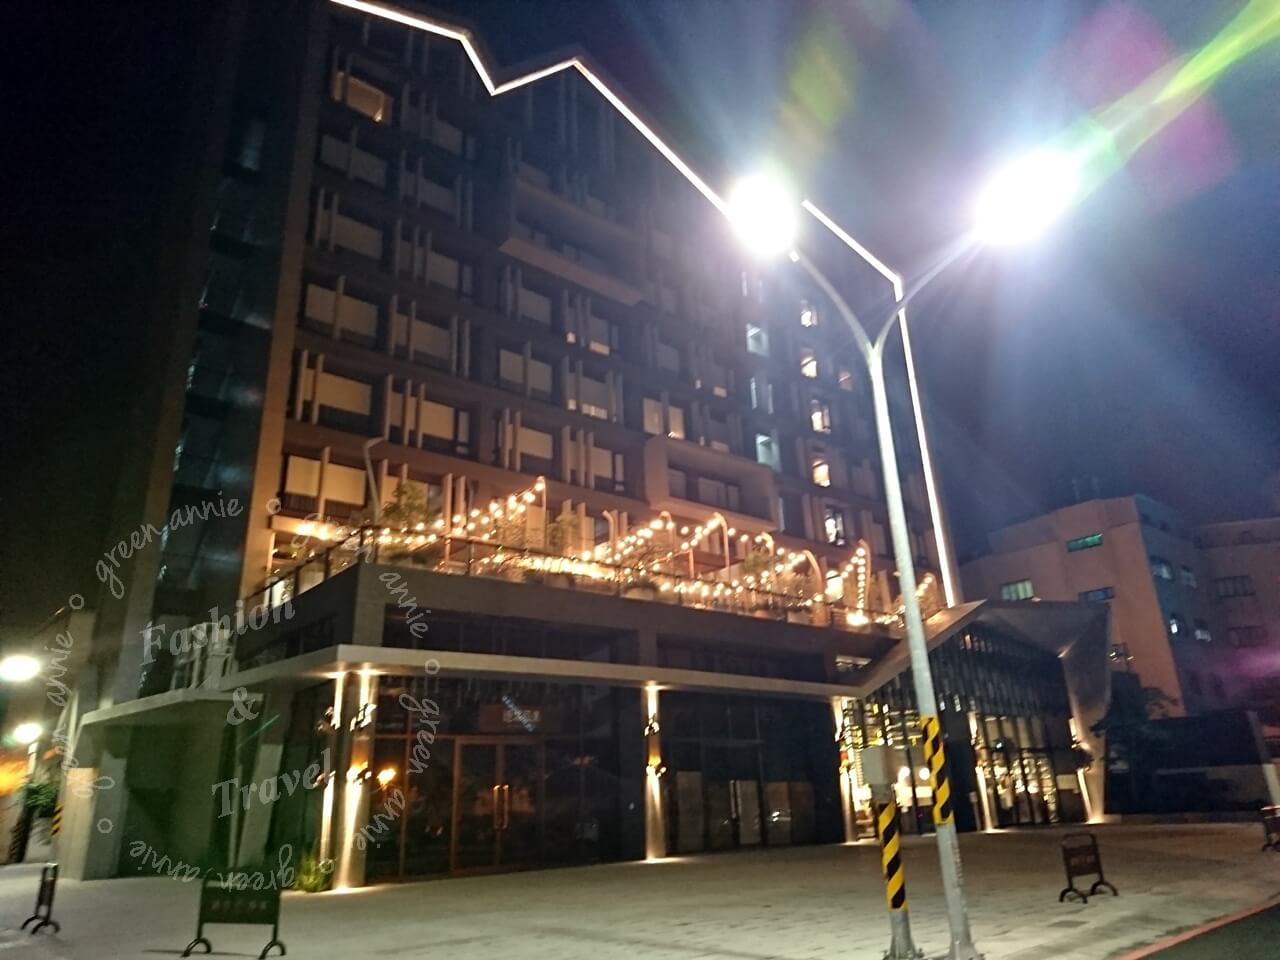 友愛街旅館: UIJ Hotel & Hostel